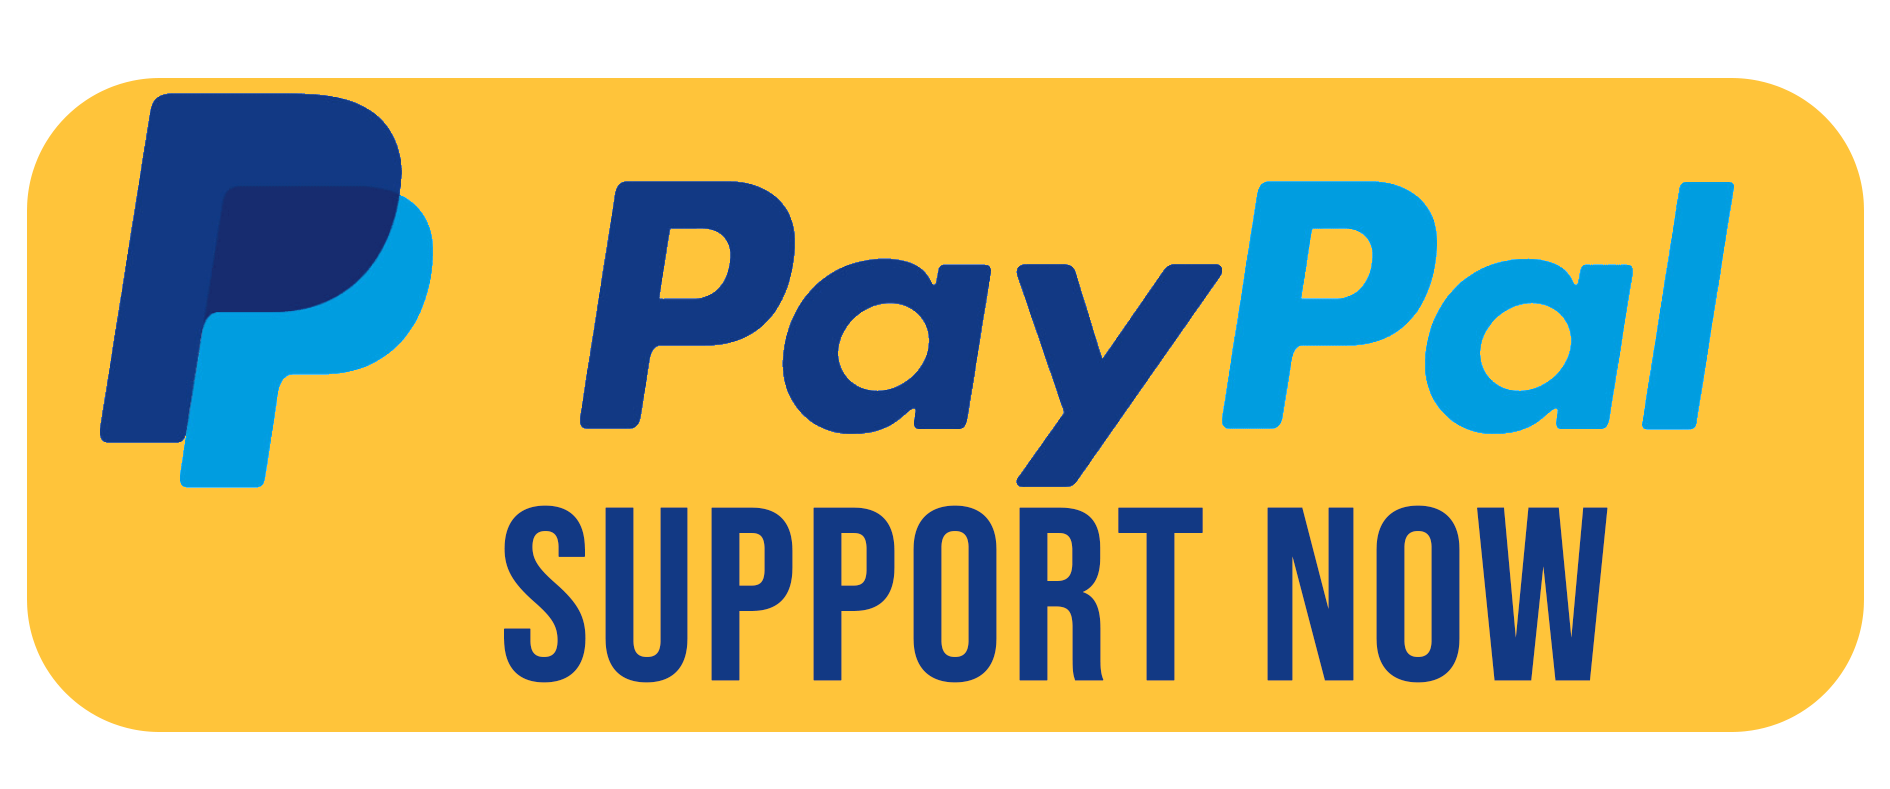 Donar con PayPal